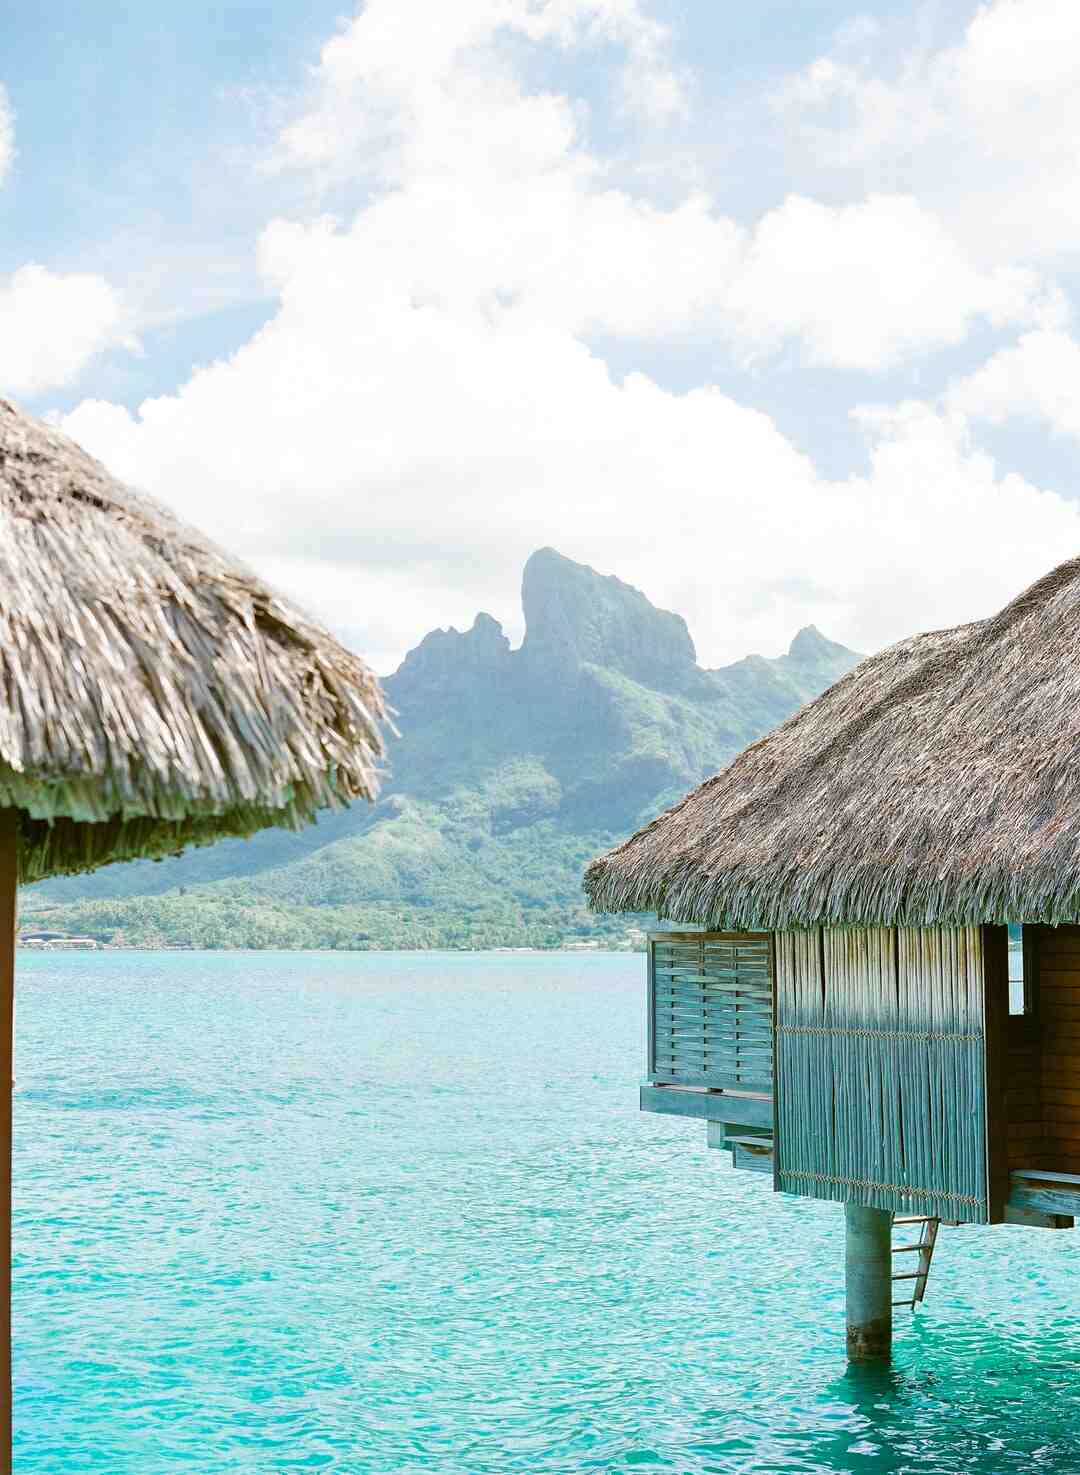 Wann sollte man nach Bora Bora reisen?